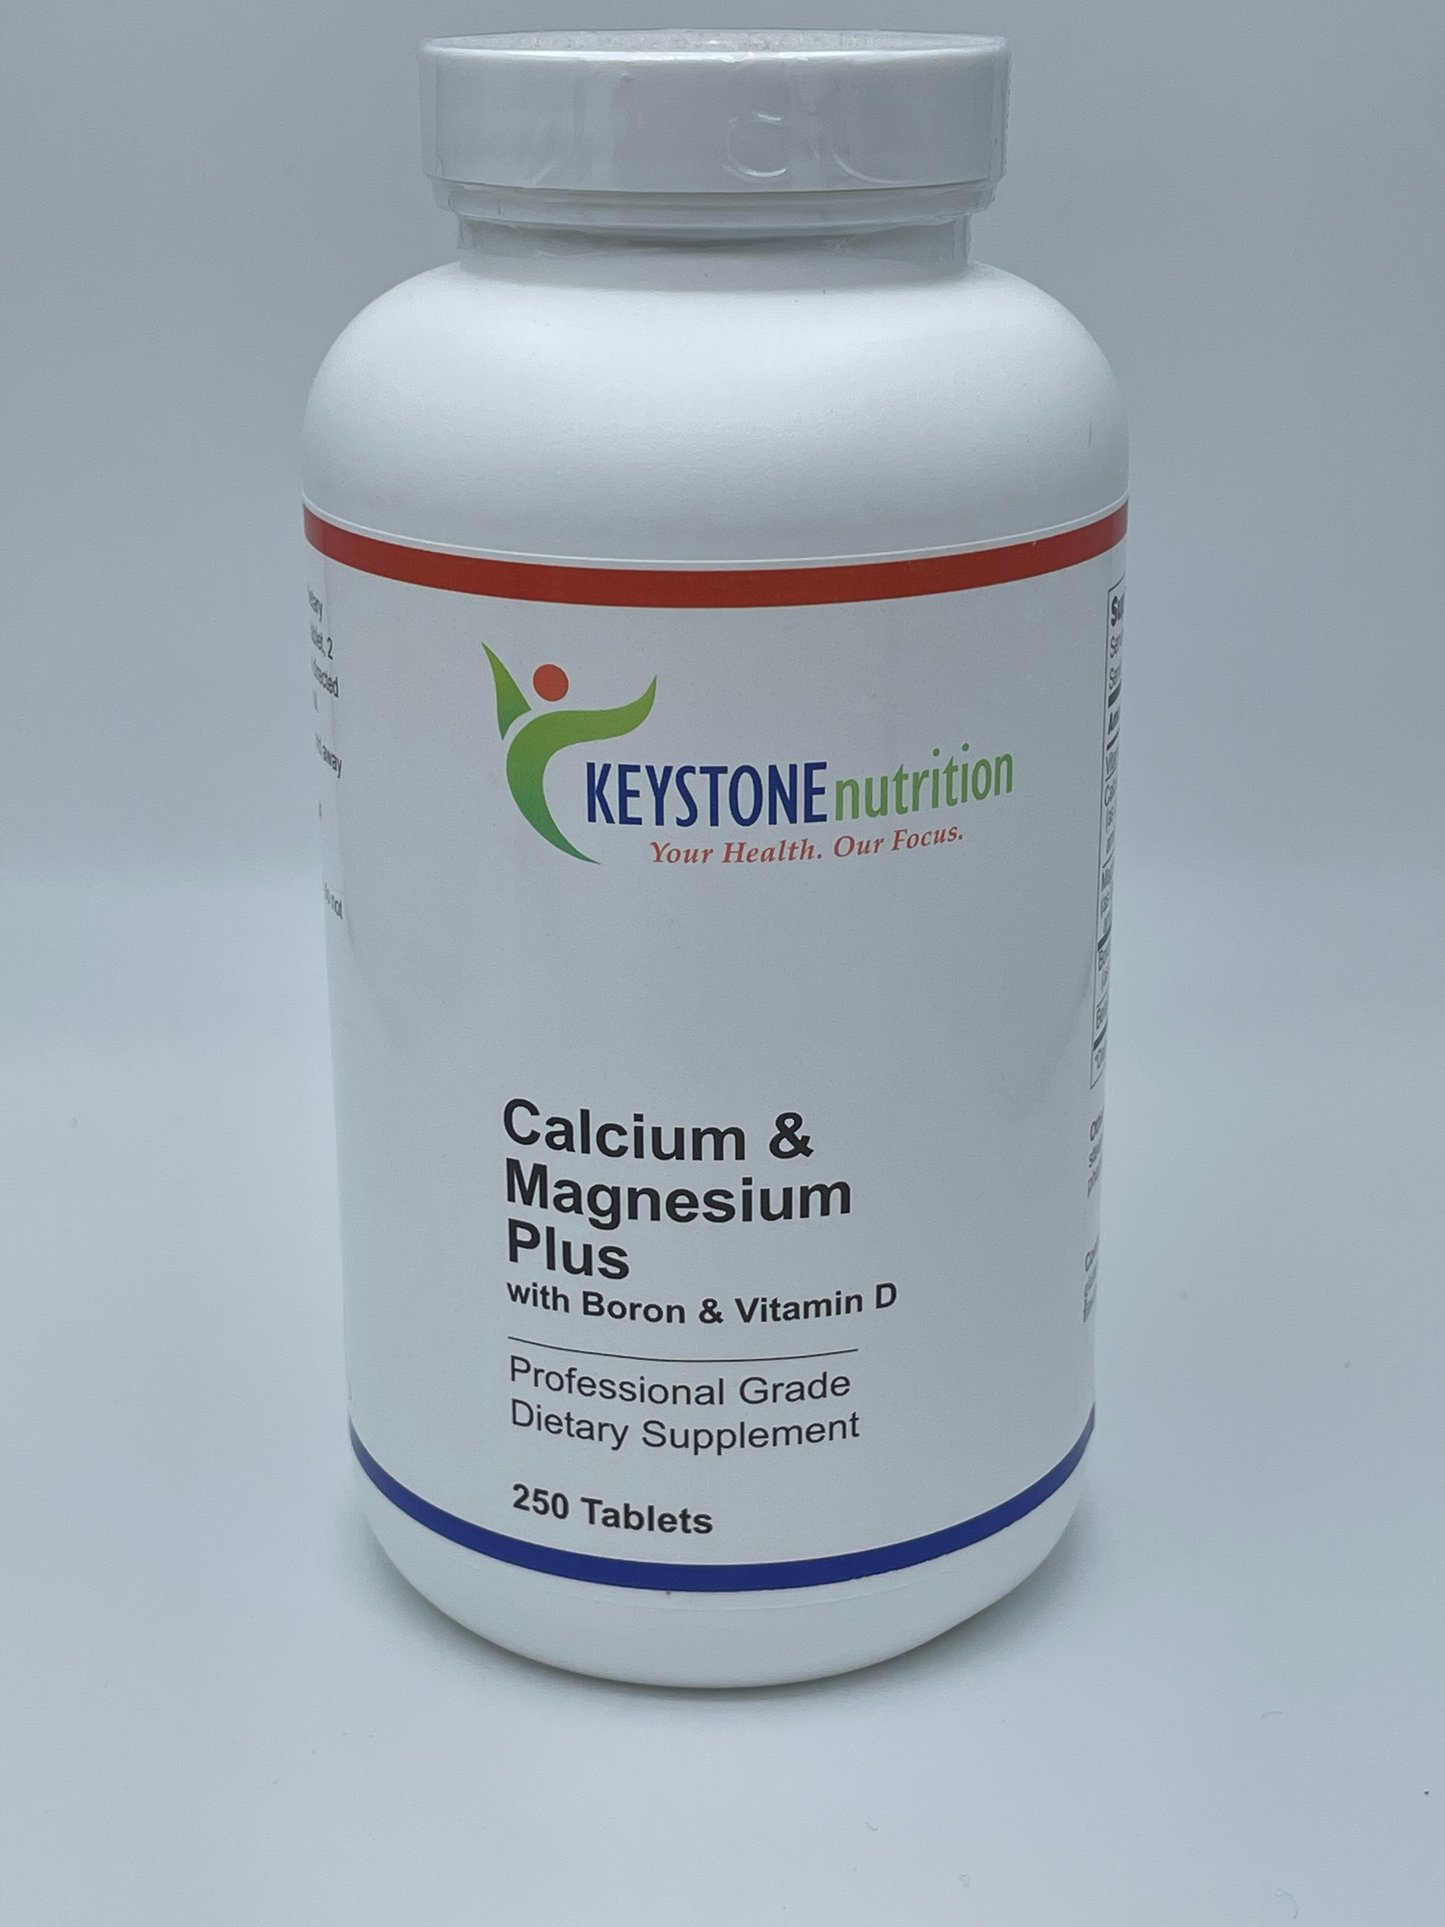 Calcium & Magnesium Plus / with Boron & Vitamin D